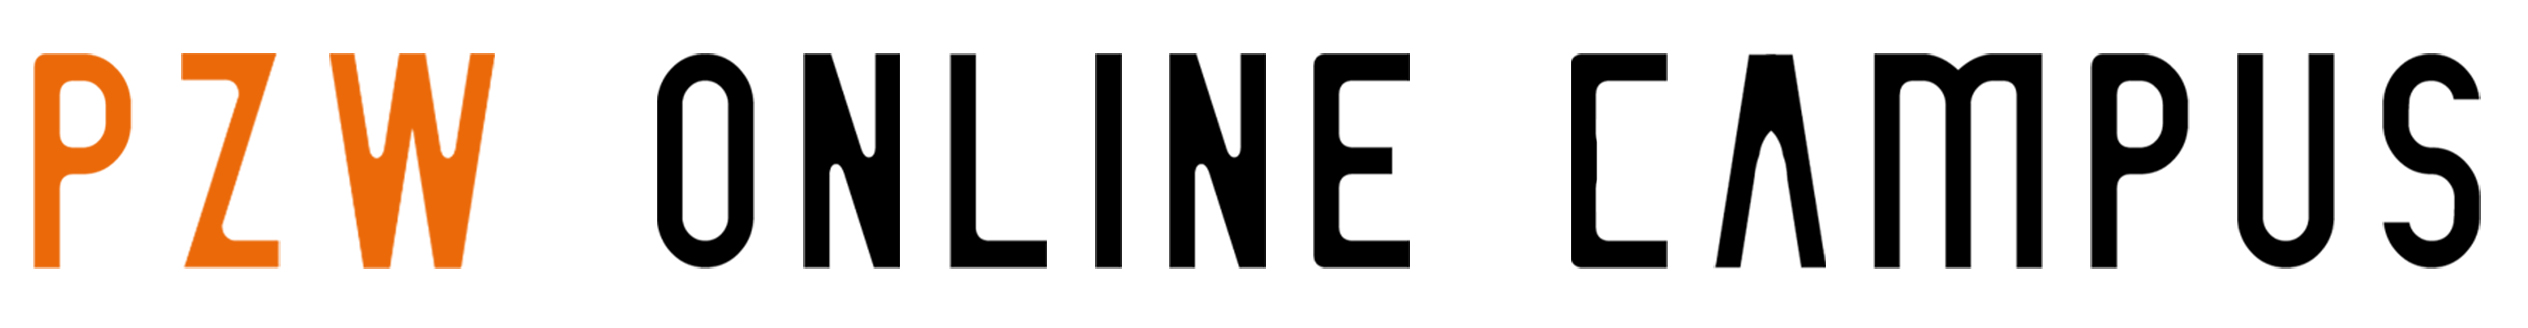 Online Campus -Logo, Link zur Startseite